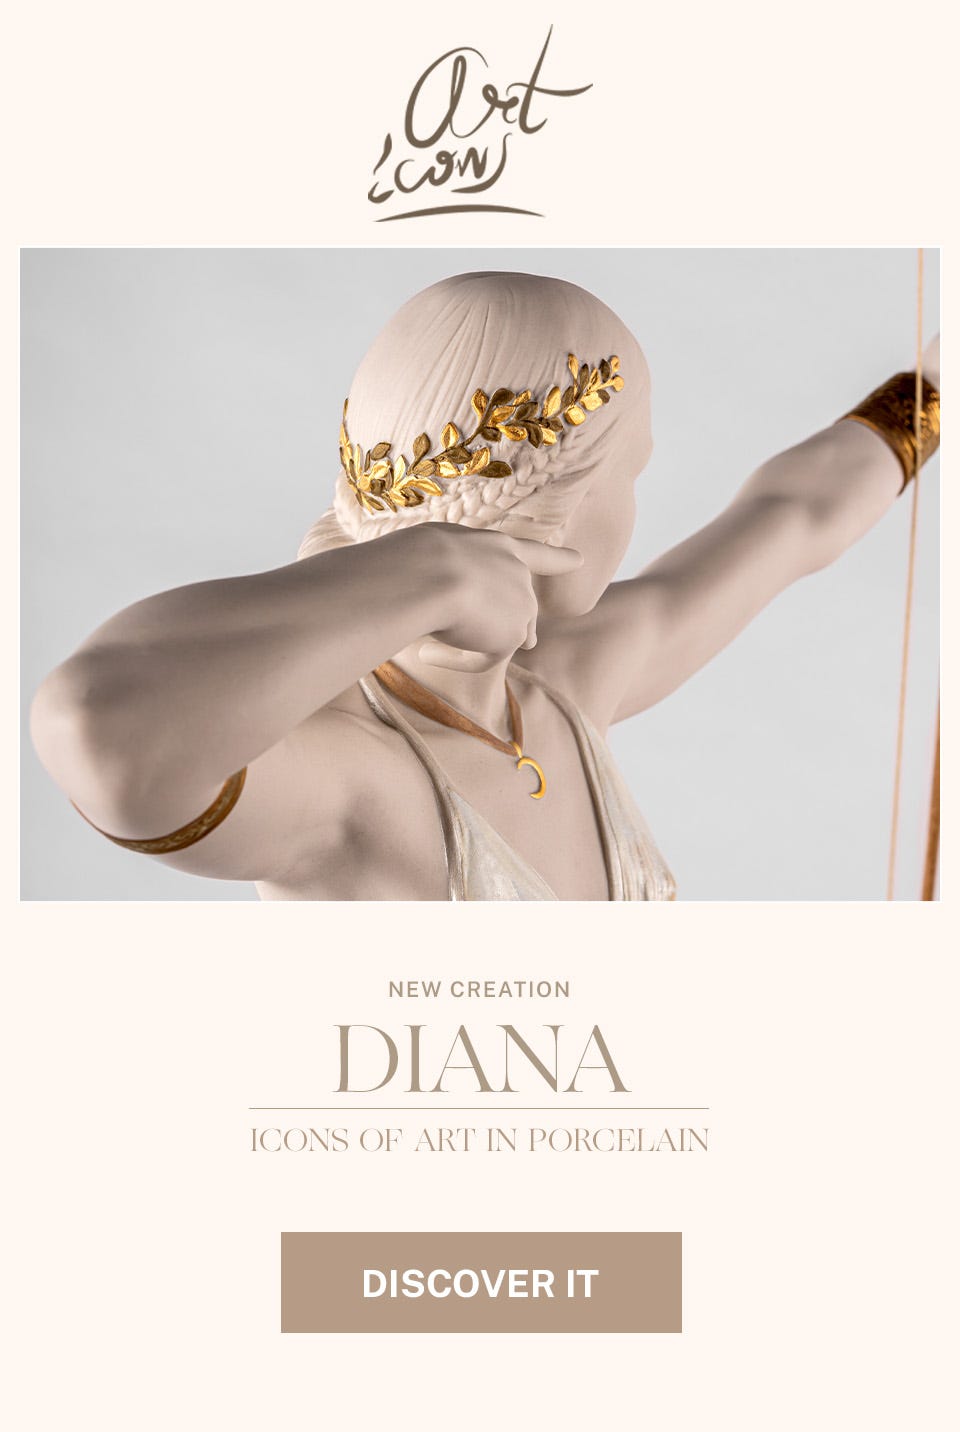 Diana sculpture.